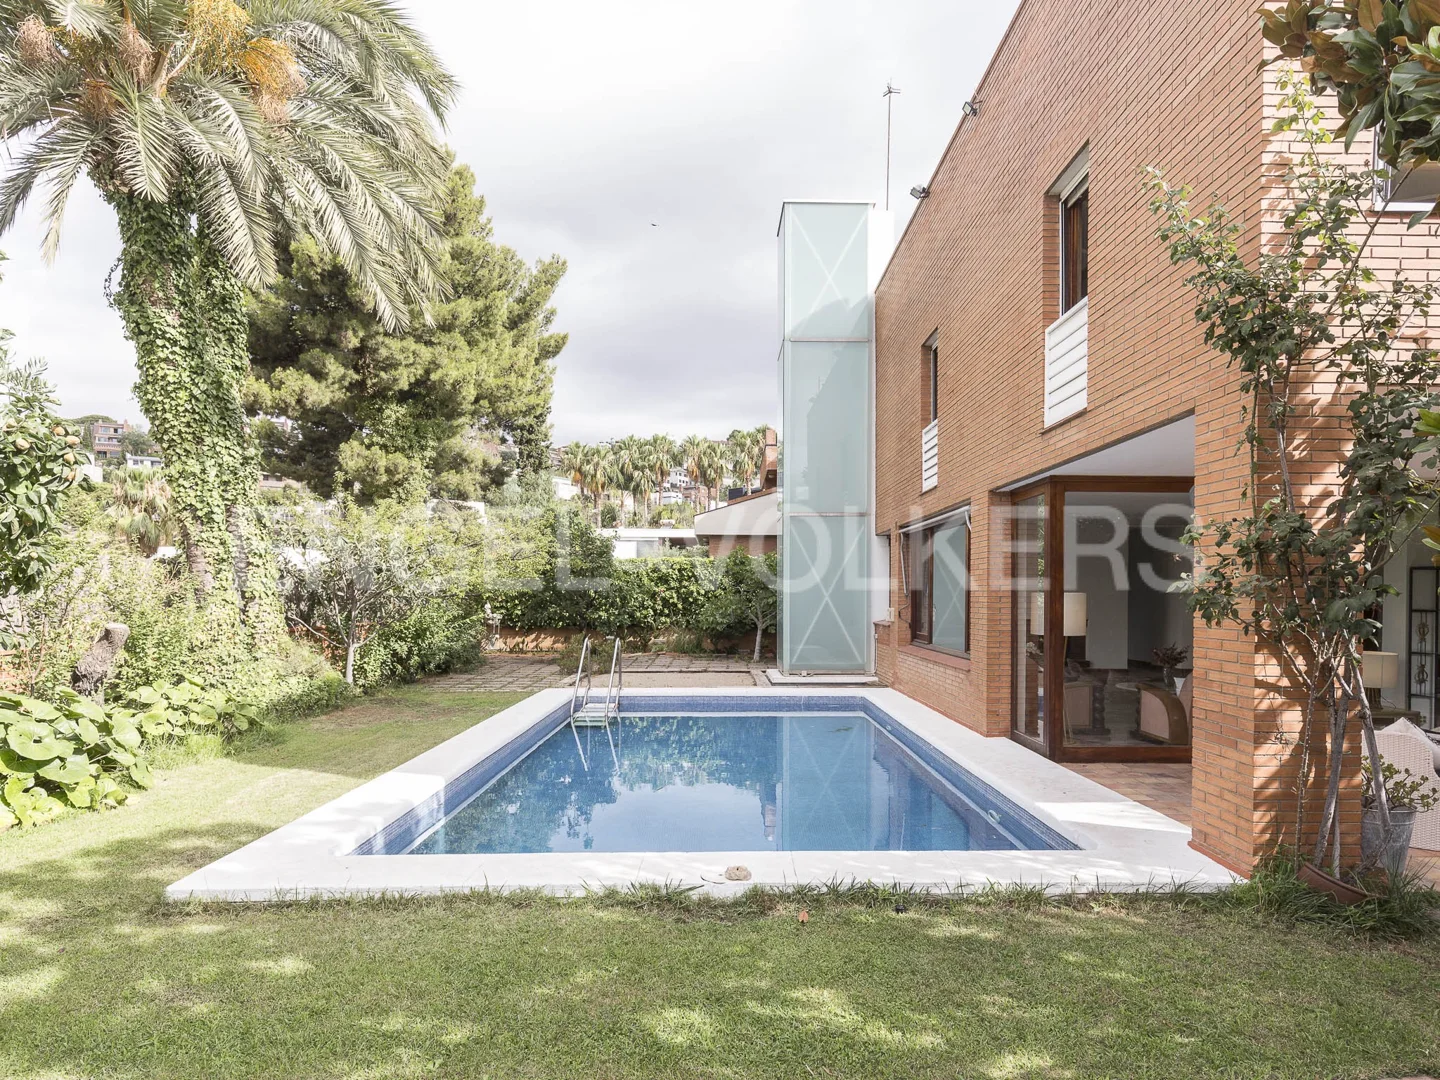 Exclusiva casa con piscina en Ciudad Diagonal